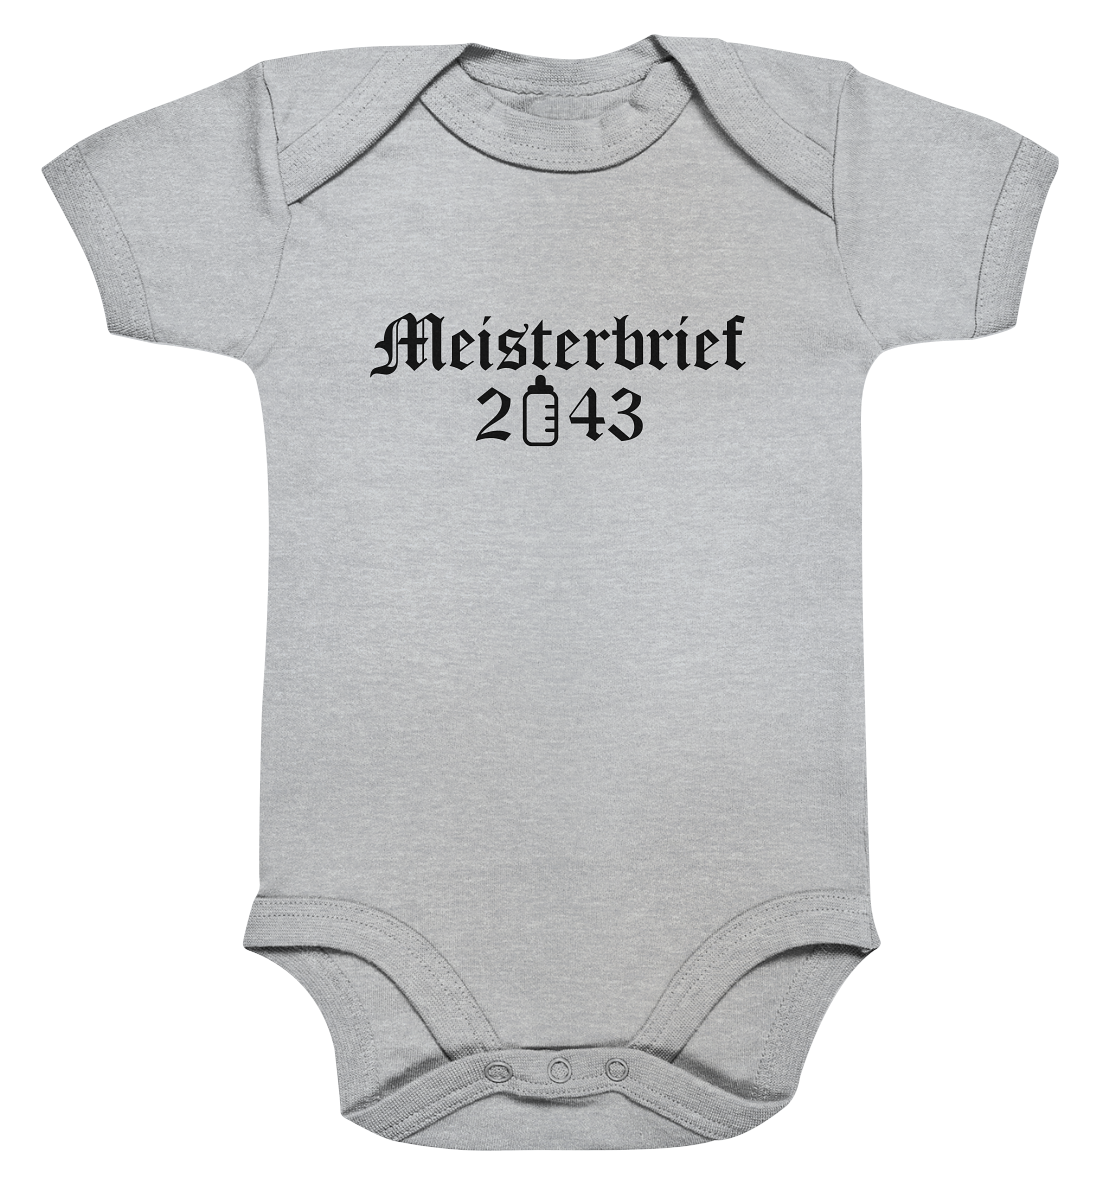 Meisterbrief 2043 / Druck schwarz Baby Bodysuite - Baufun Shop